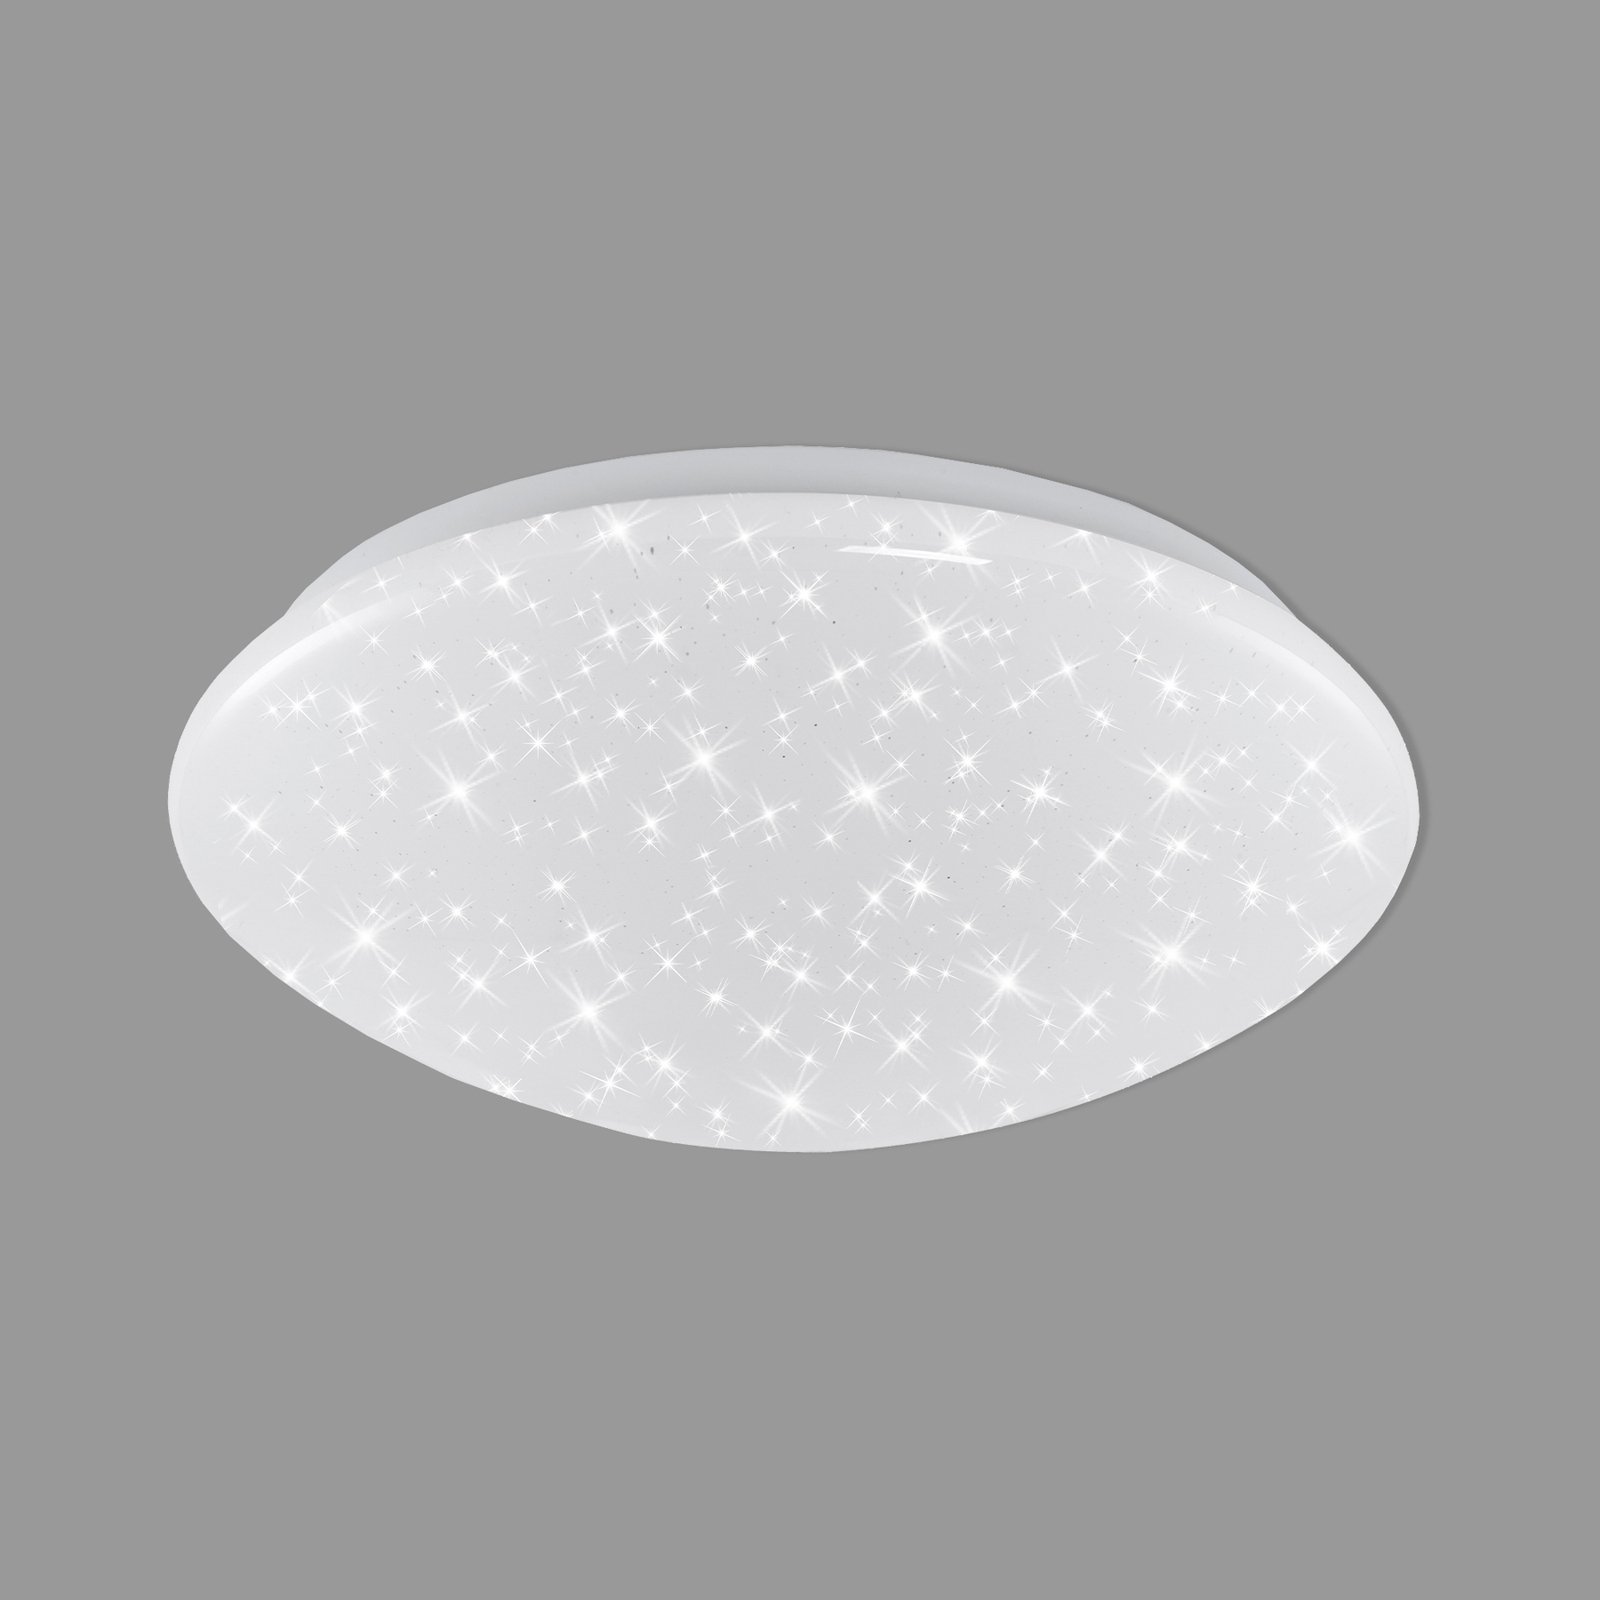 Elipso LED ceiling light starry sky IP44 4,000 K